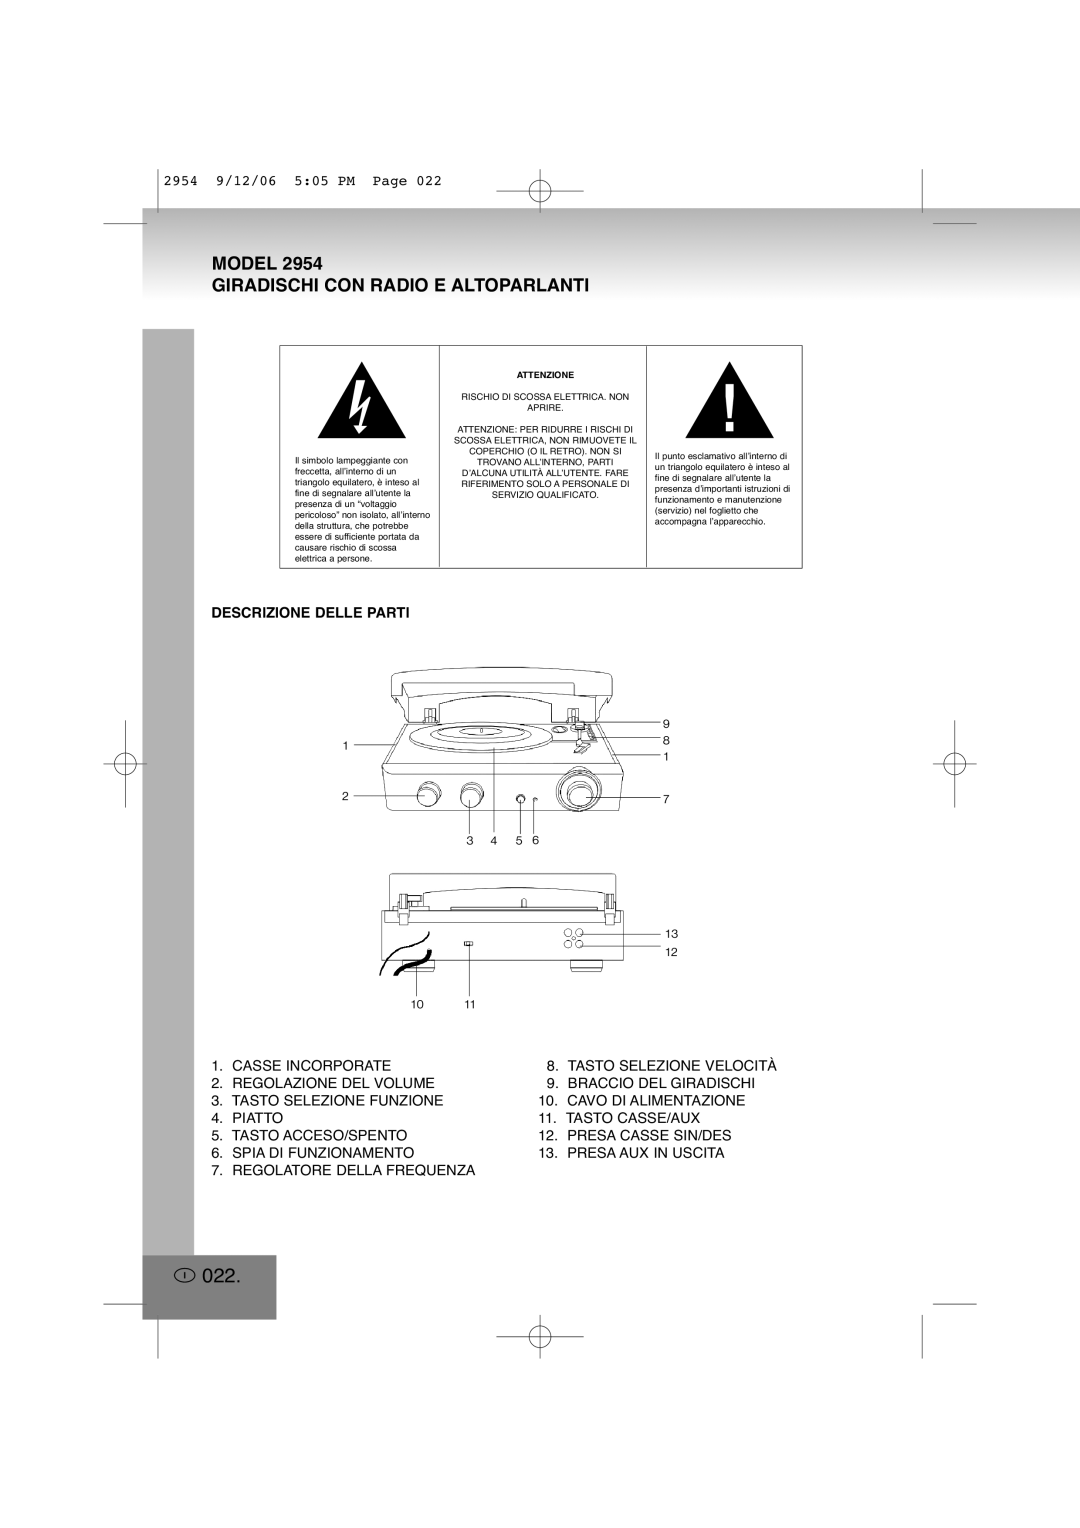 Elta 2954 manual I022, Model Giradischi Con Radio E Altoparlanti, Descrizione Delle Parti 